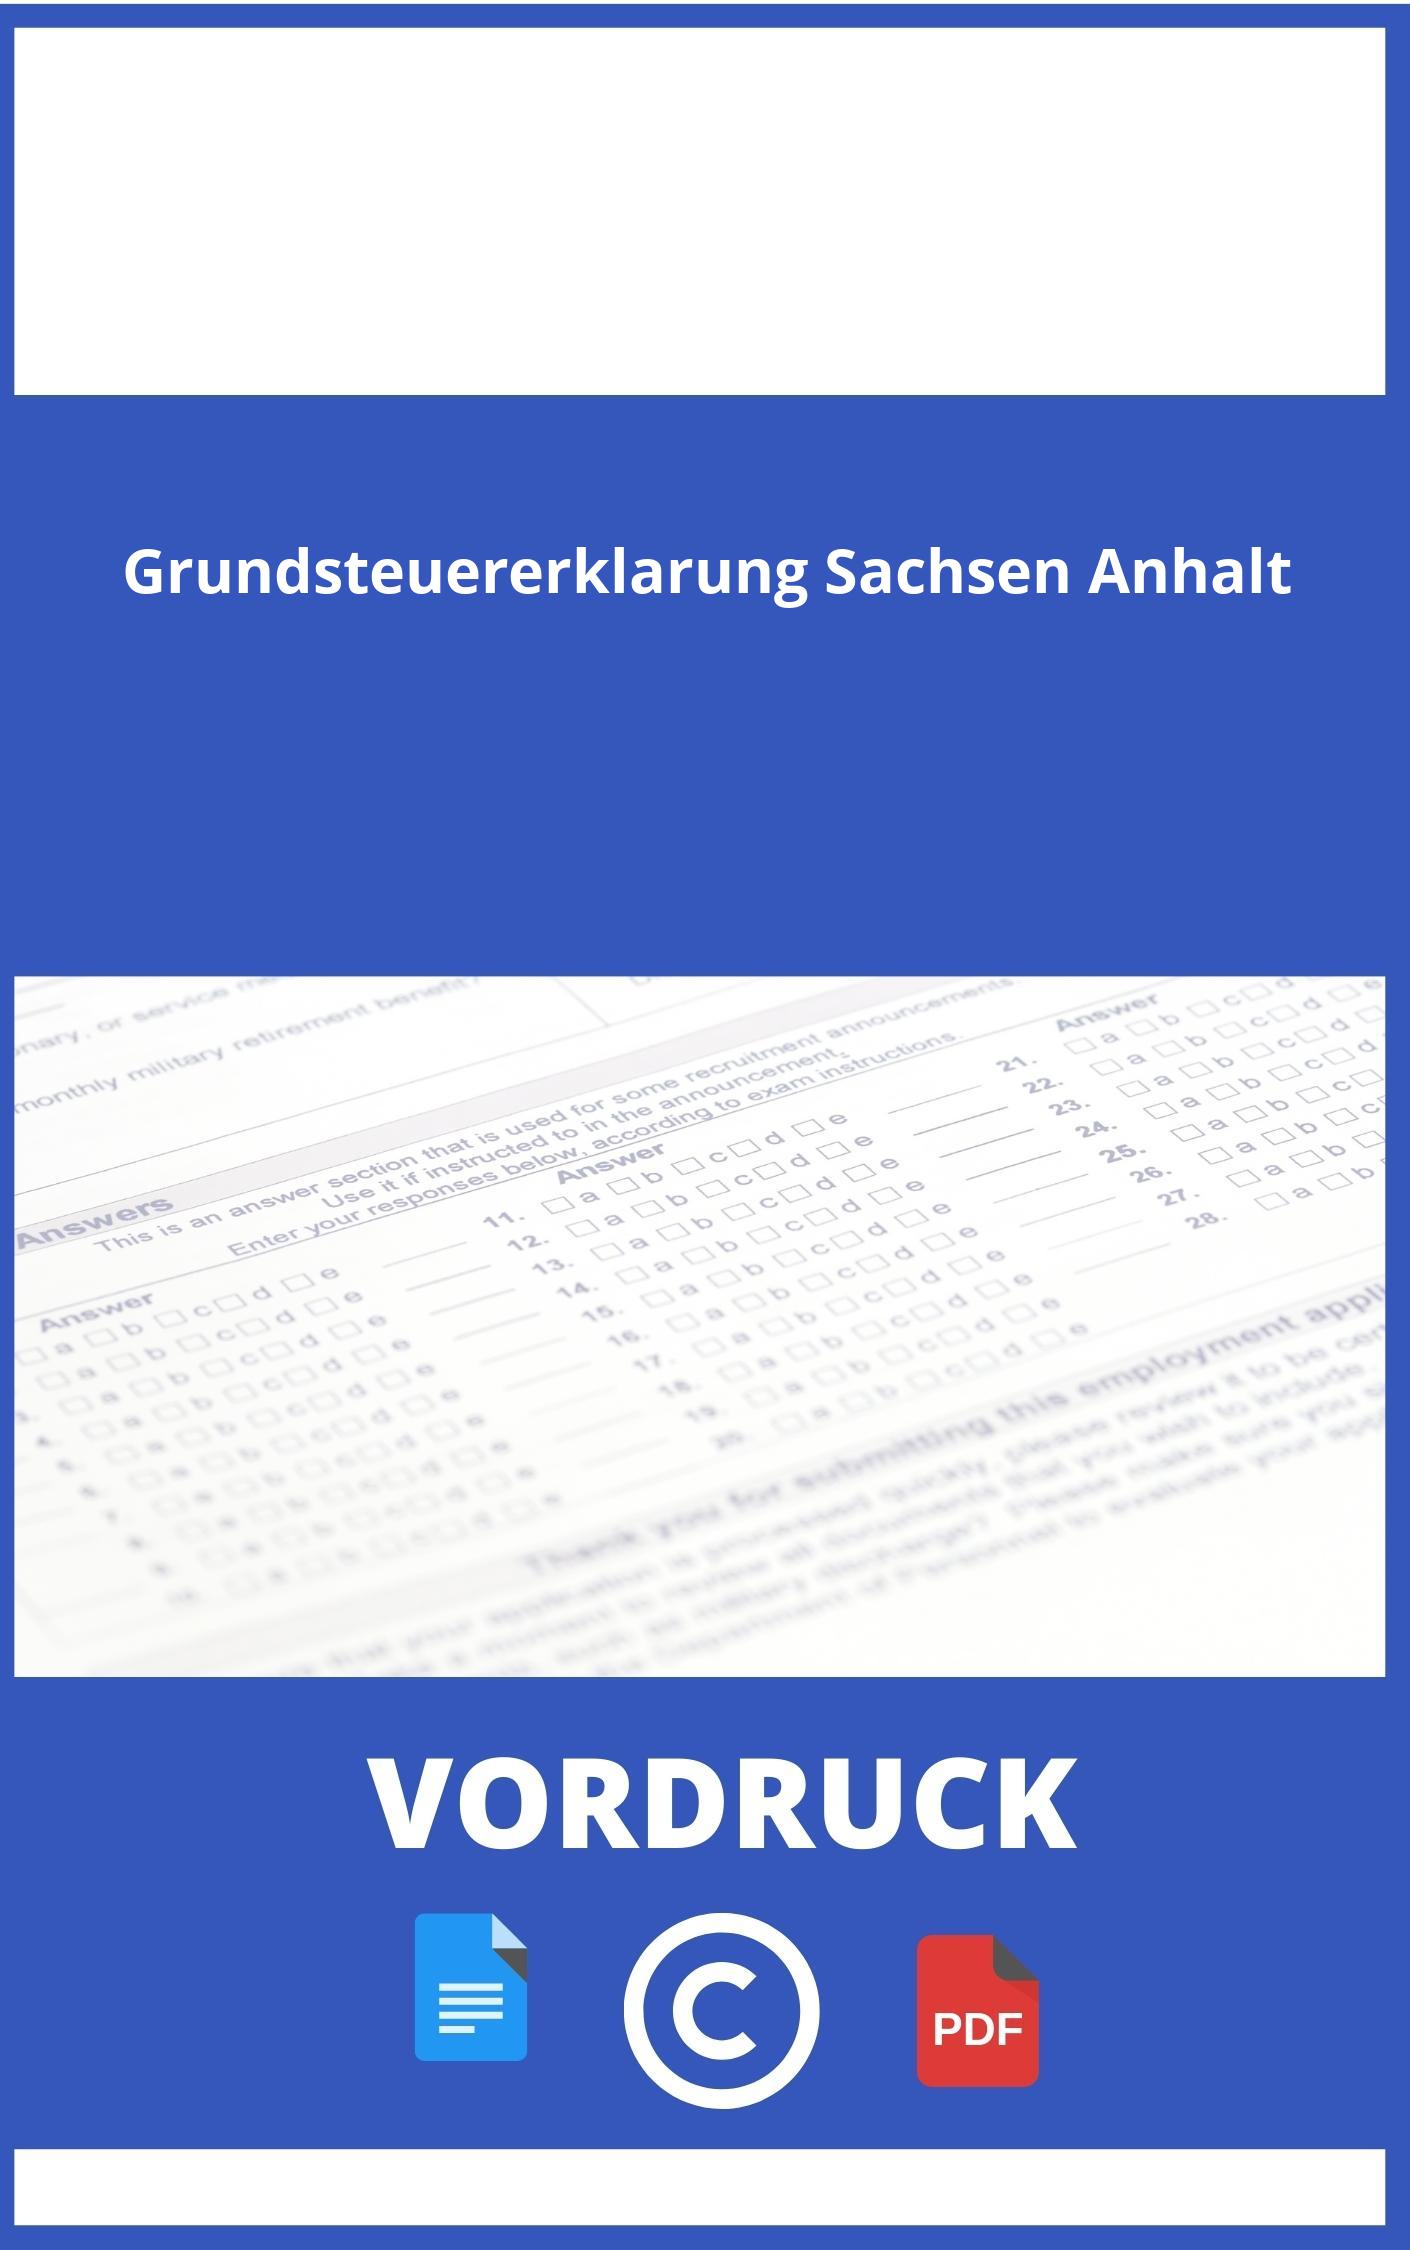 Vordruck Grundsteuererklärung Sachsen Anhalt